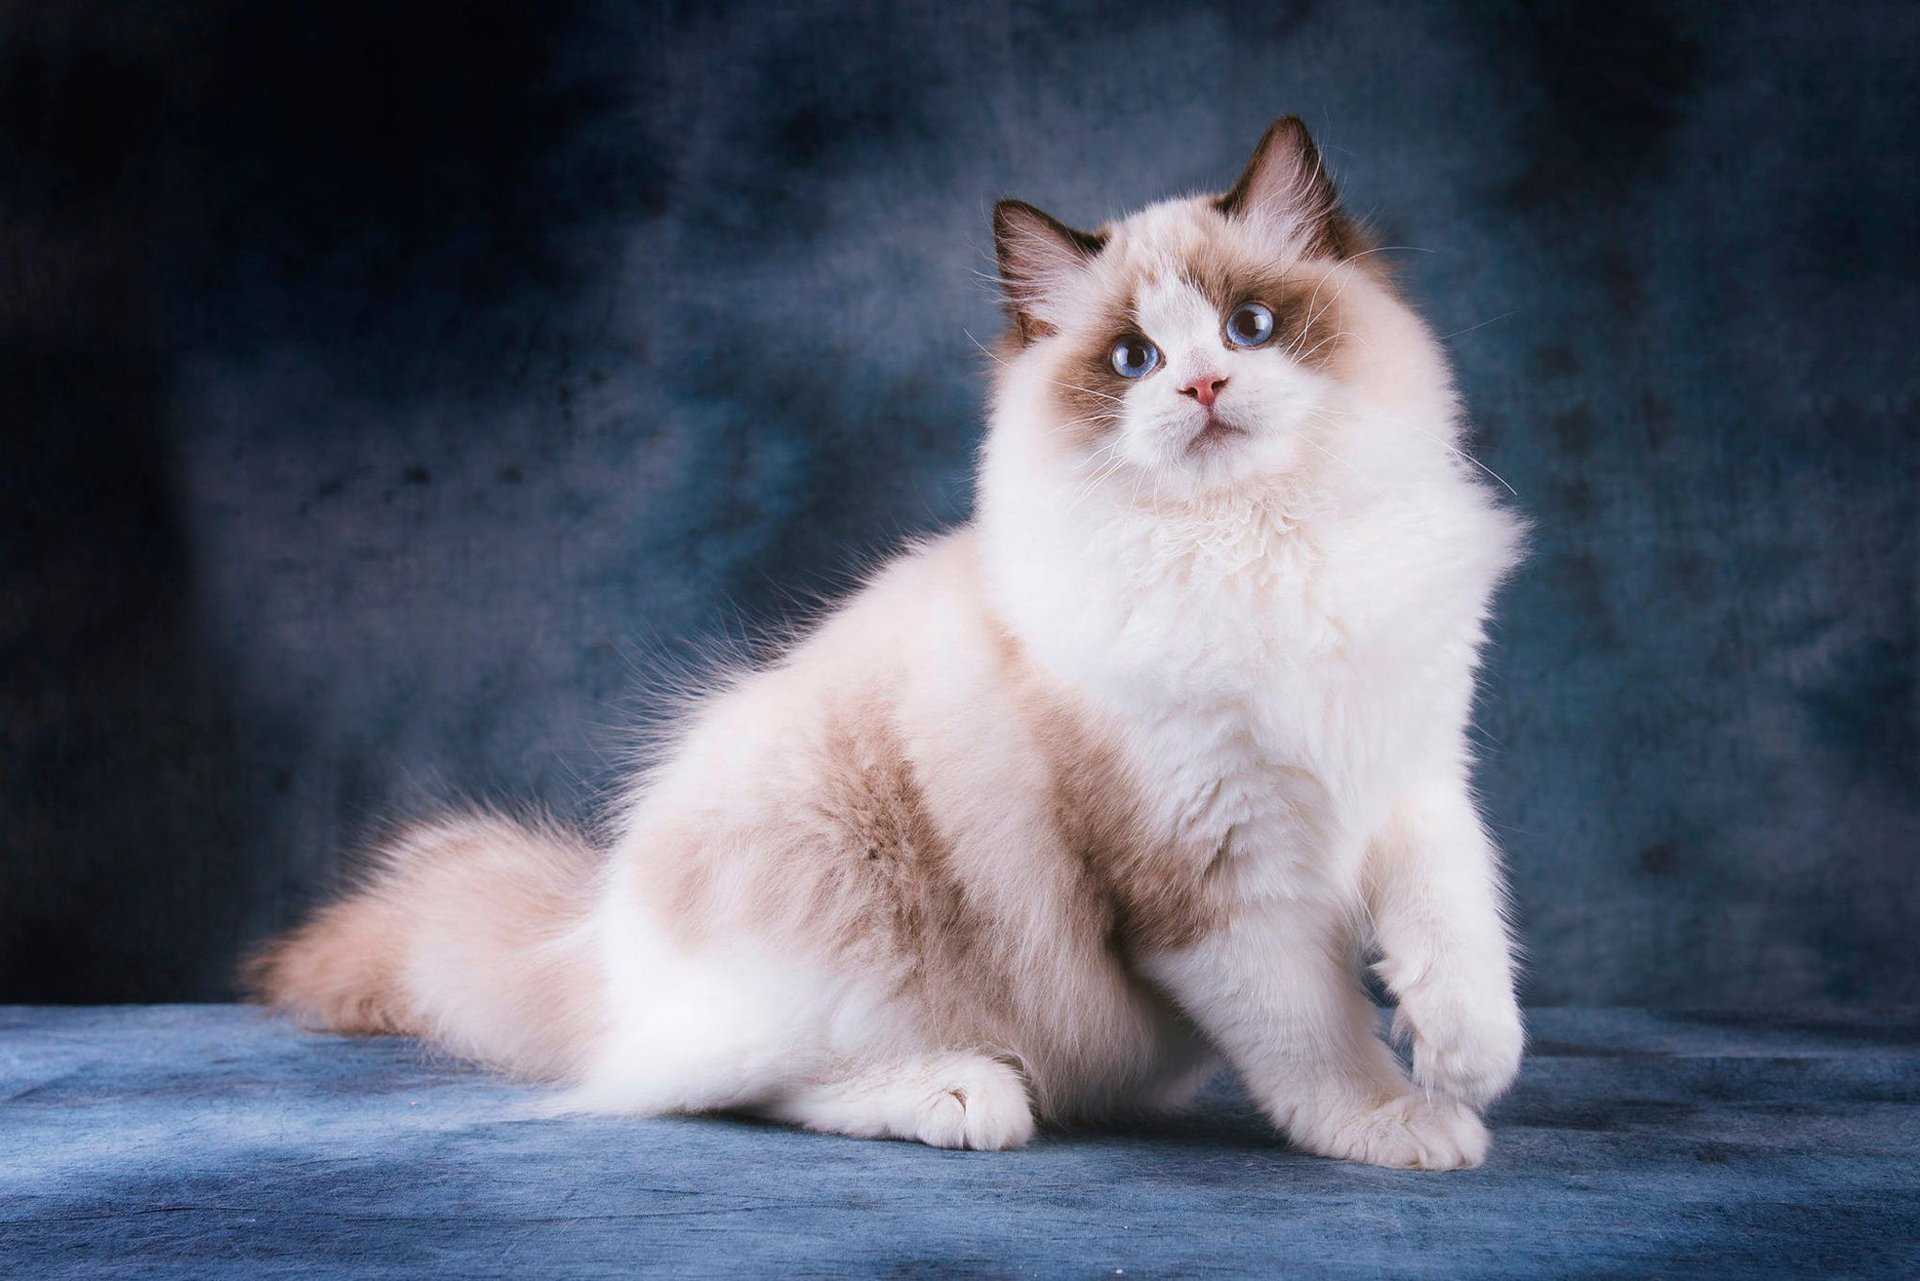 Рэгдолл — порода плюшевых кошек